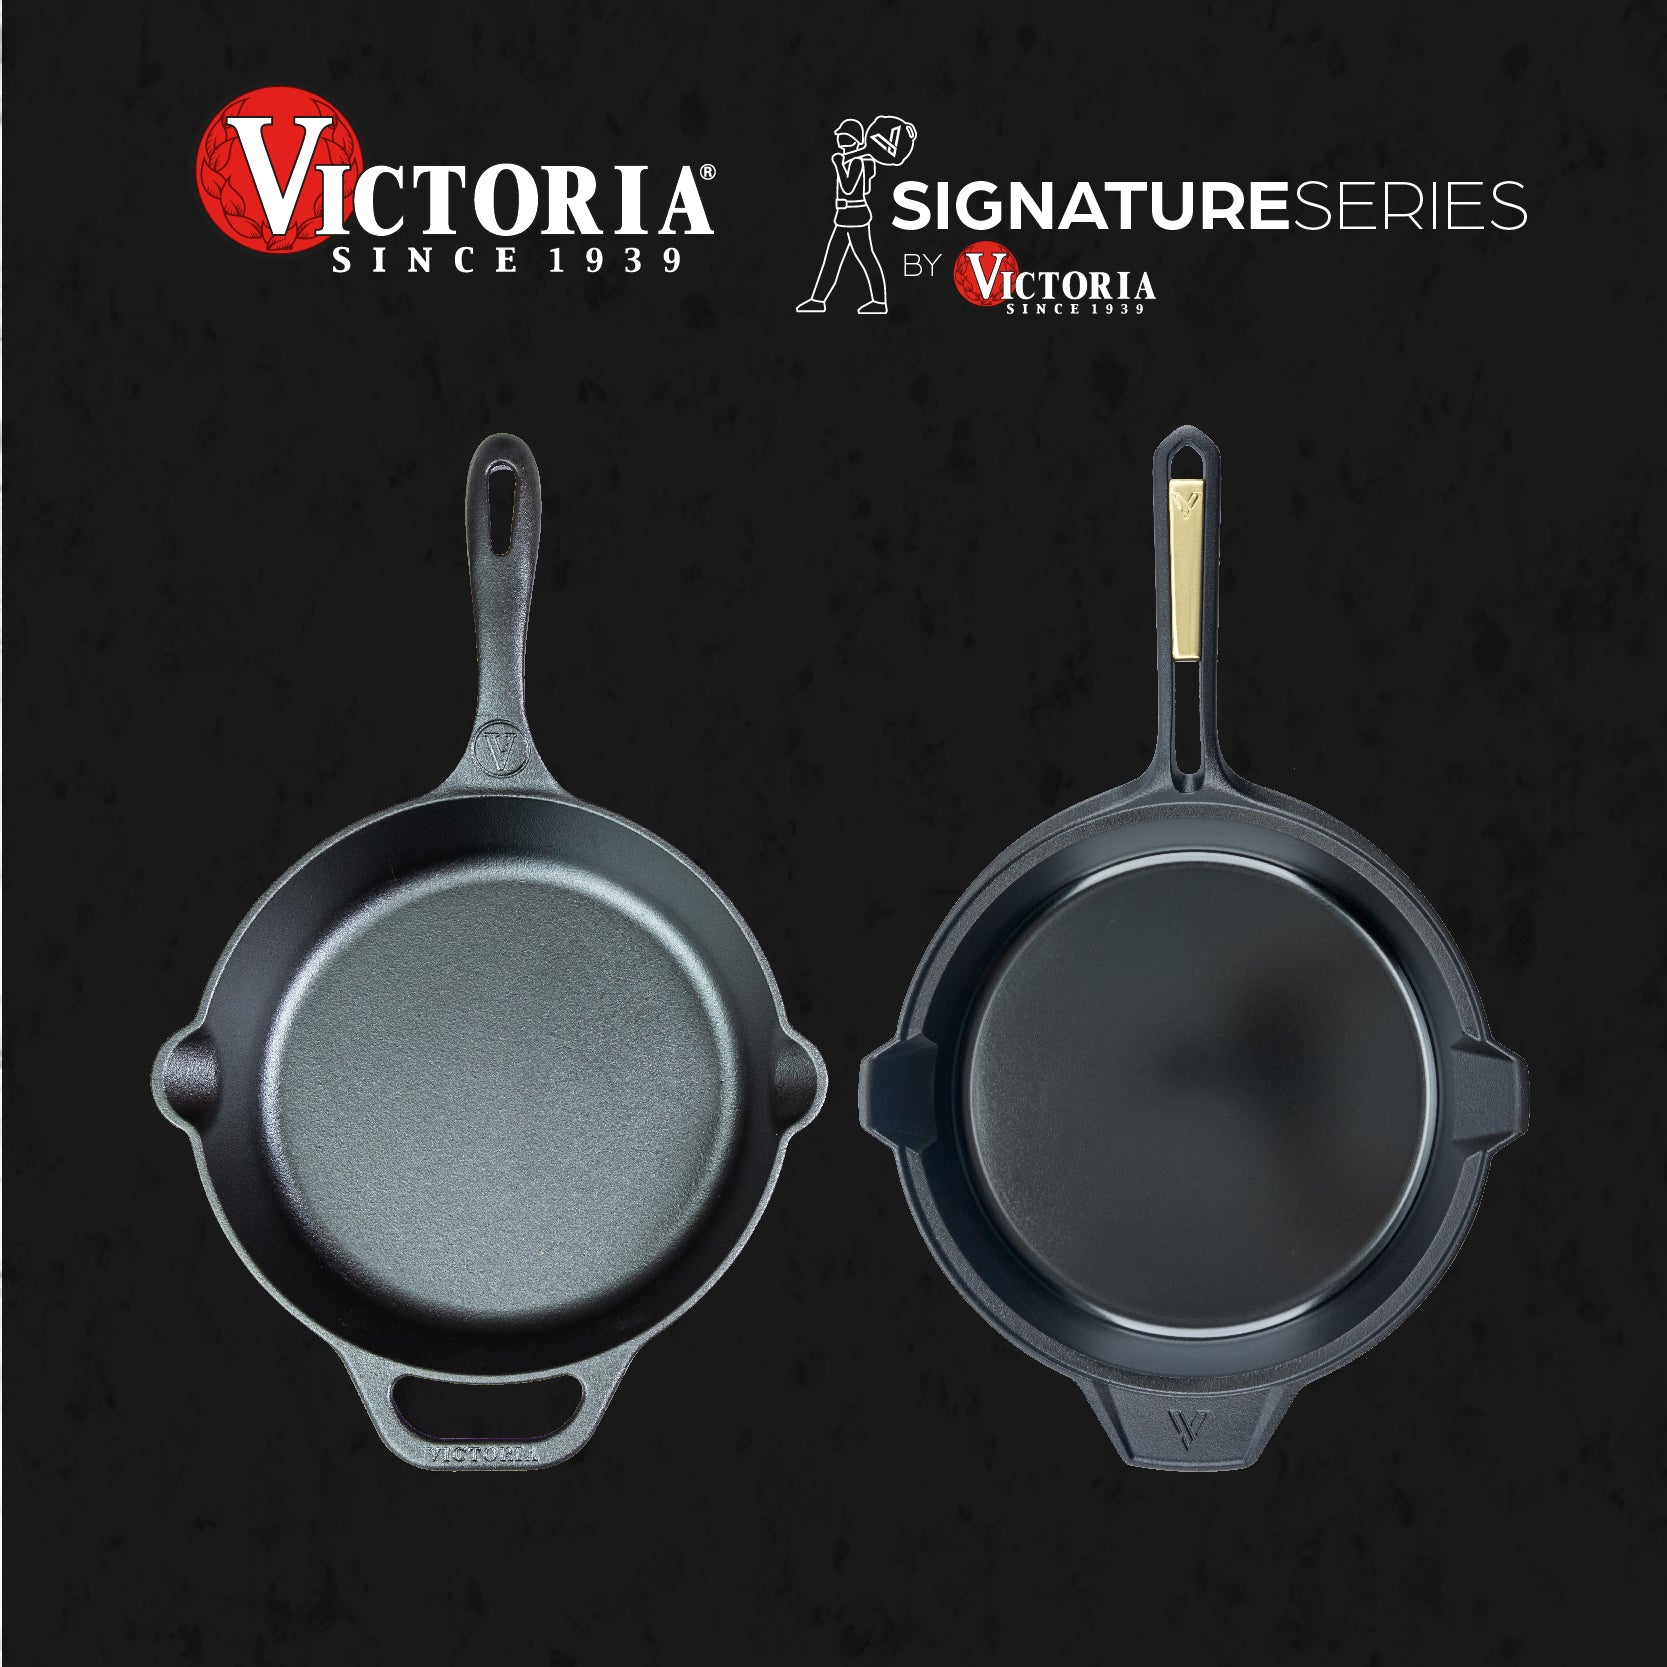 Victoria vs Signature Series